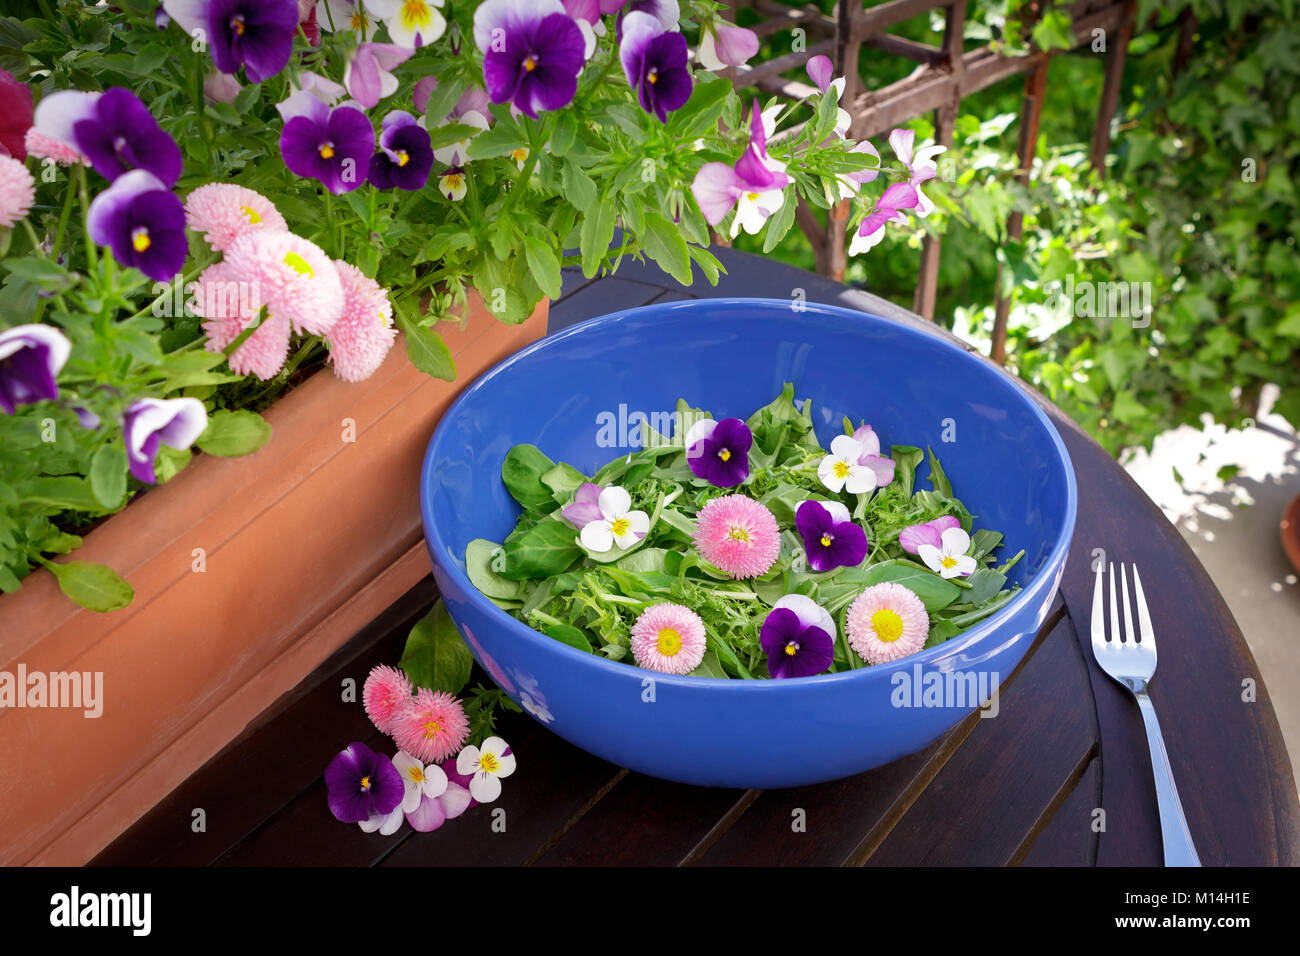 Blau salat Schüssel mit Gemischte grüne Salatblätter und genießbare Gänseblümchen und Stiefmütterchen Blumen auf einem dunklen Holztisch im Freien, Gänseblümchen und Stiefmütterchen Pflanzen in einem Topf in Stockfoto